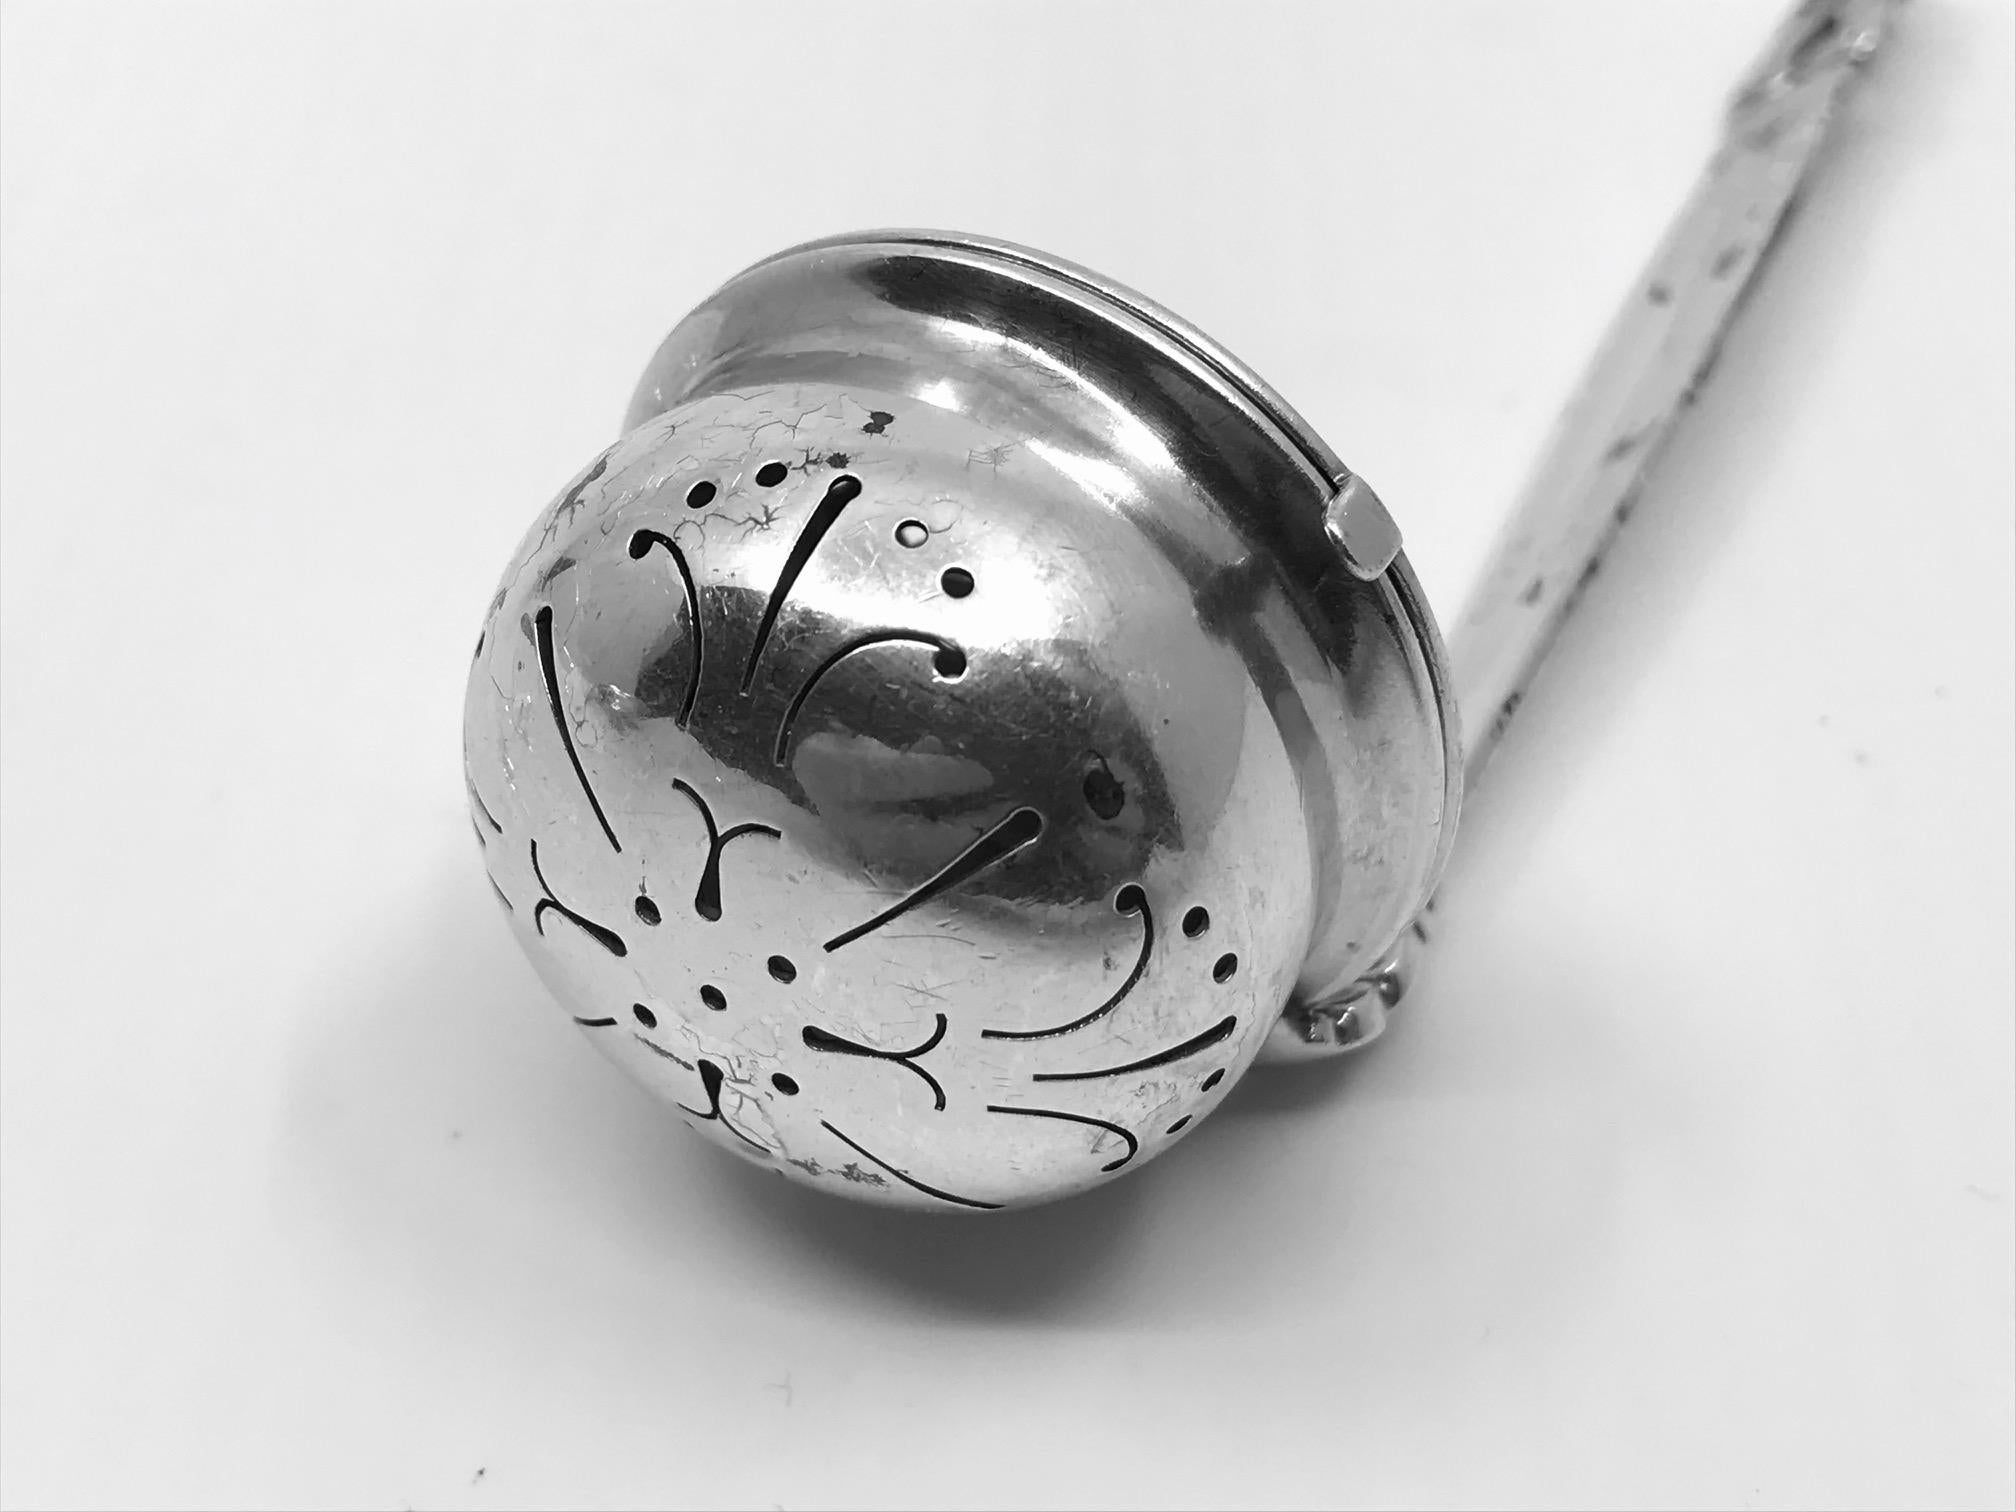 Œuf à thé ou infuseur à thé danois de Georg Jensen au motif emblématique Acorn, design #366 de Johan Rohde datant de 1915. Un œuf à thé sur anse, difficile à trouver et très recherché. Un bol minutieusement découpé avec un couvercle à charnière